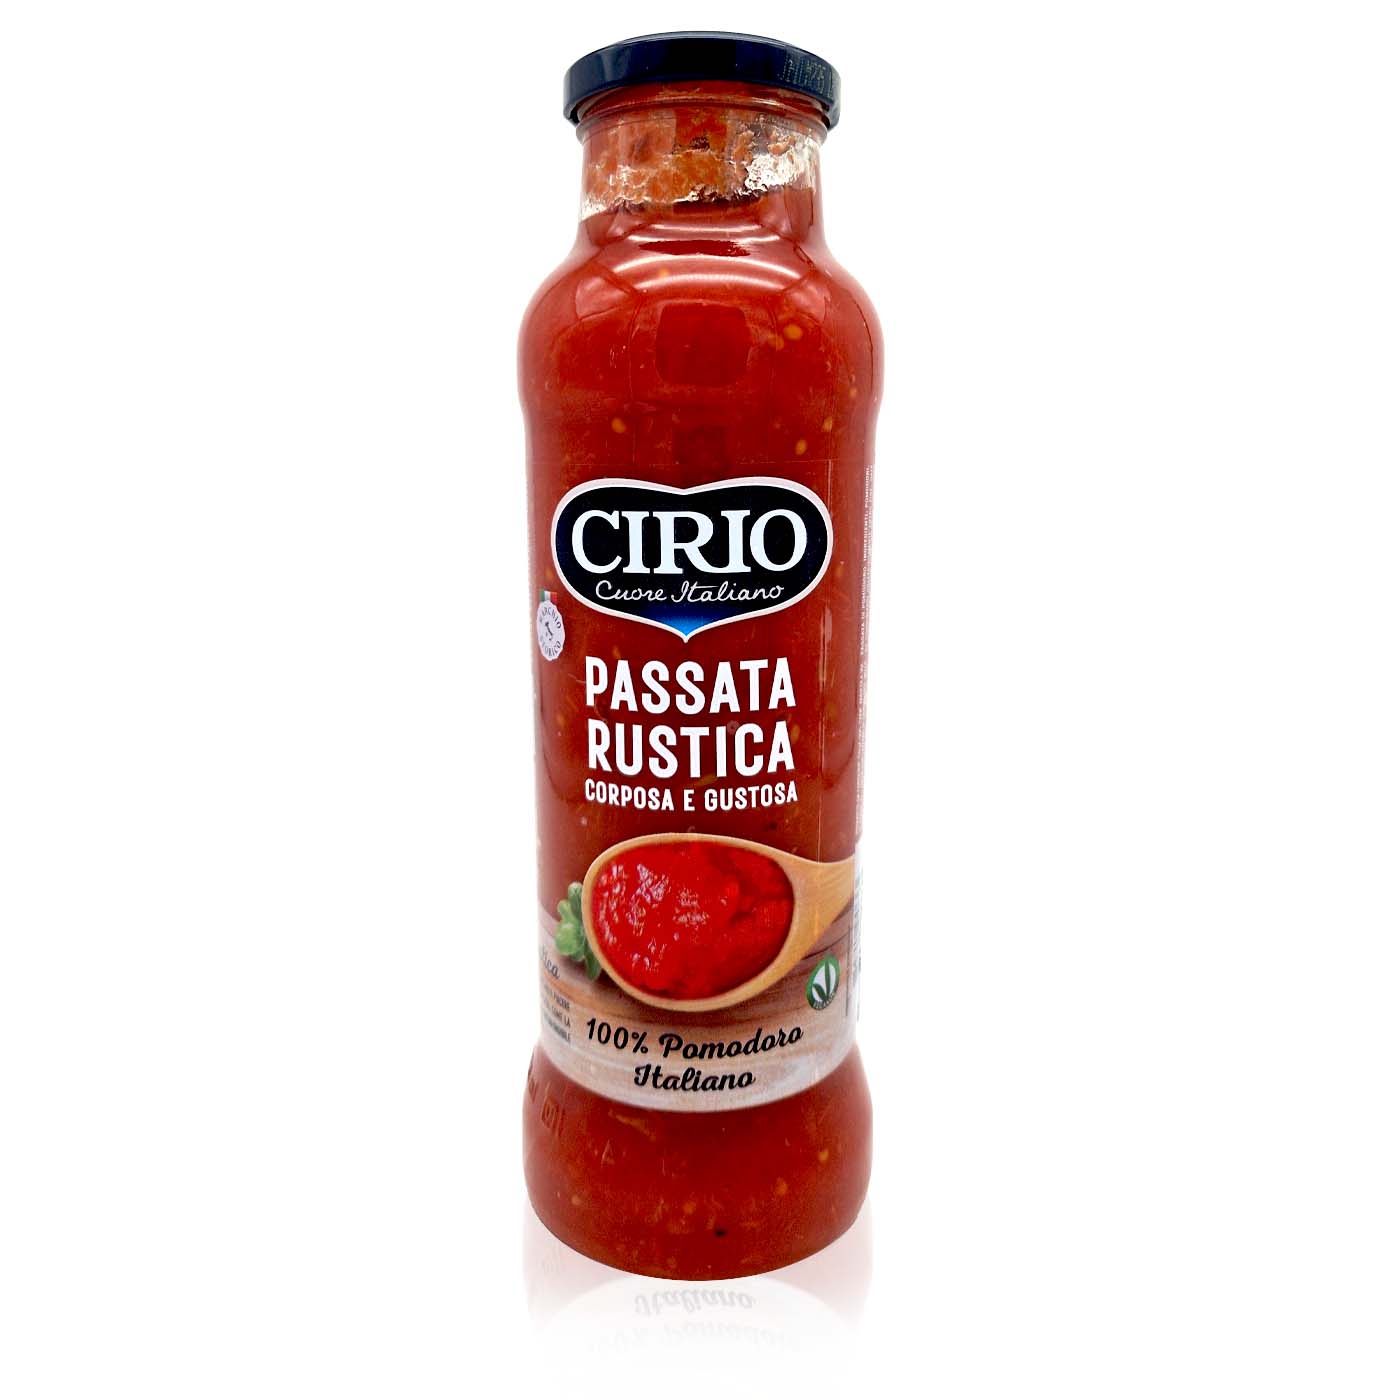 CIRIO Passata Rustica - Tomatensoße - 0,68kg - italienisch - einkaufen.de